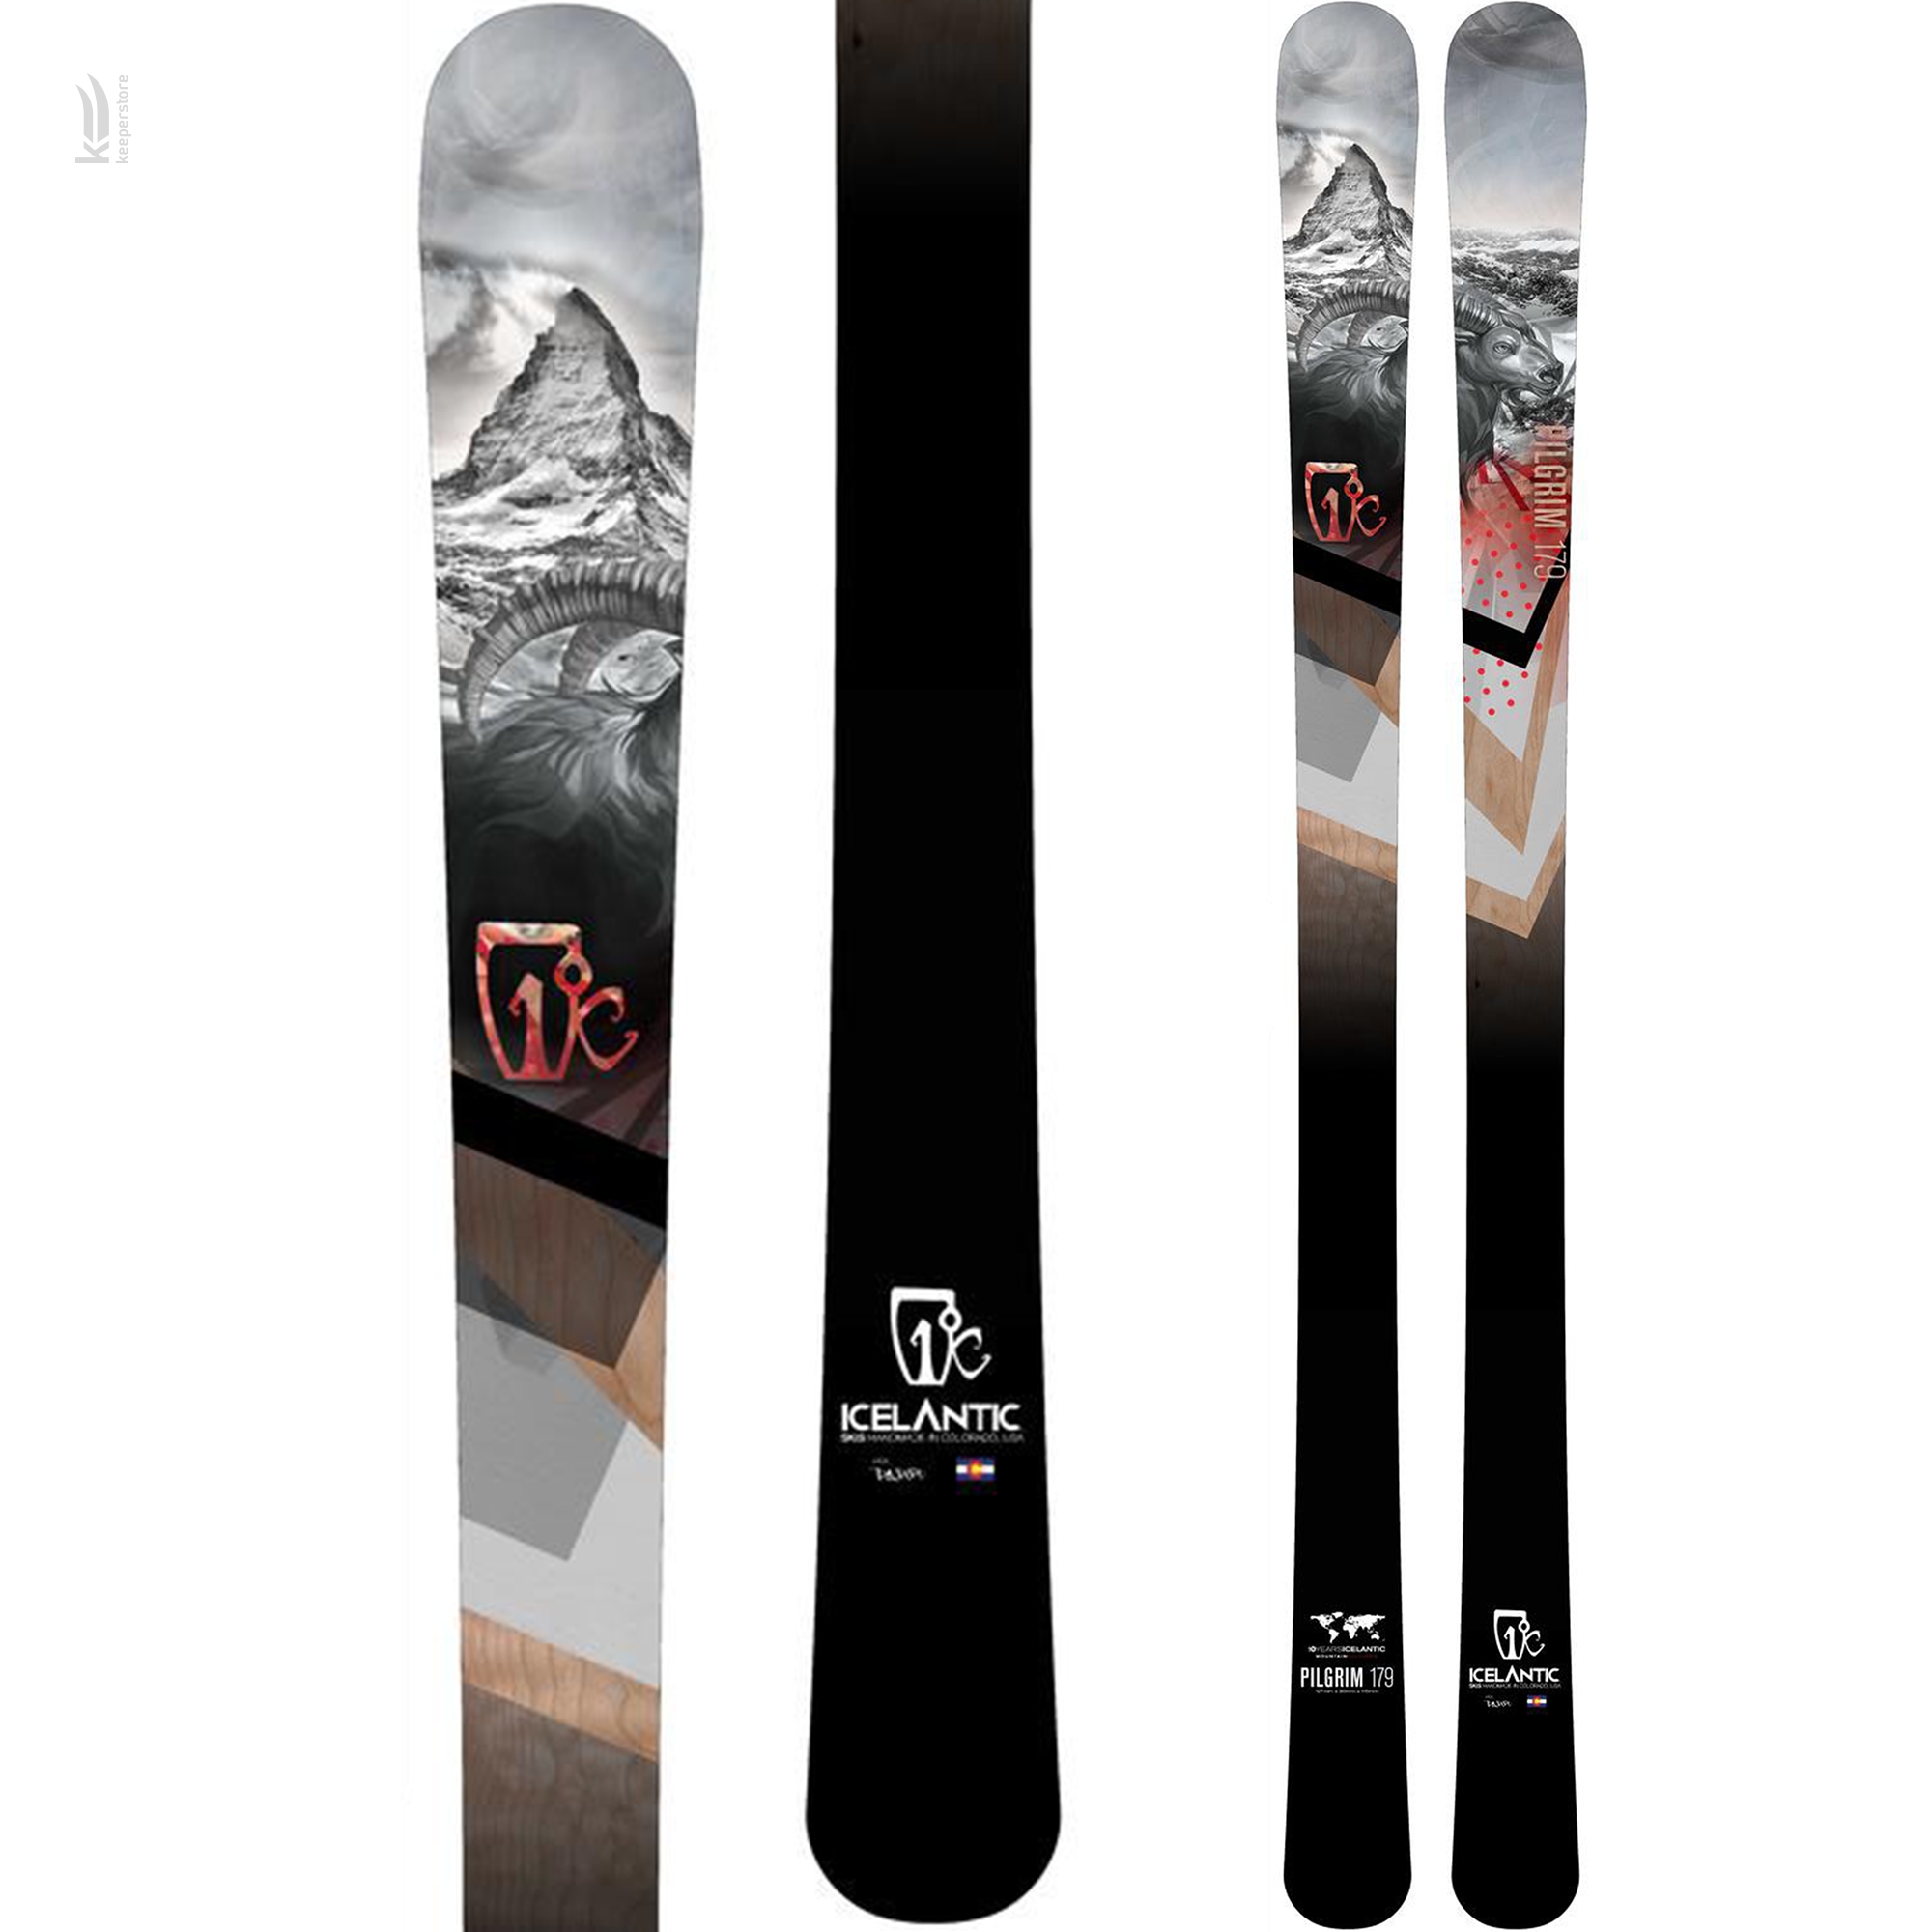 Направленные лыжи Icelantic Pilgrim 90 2015/2016 169cm